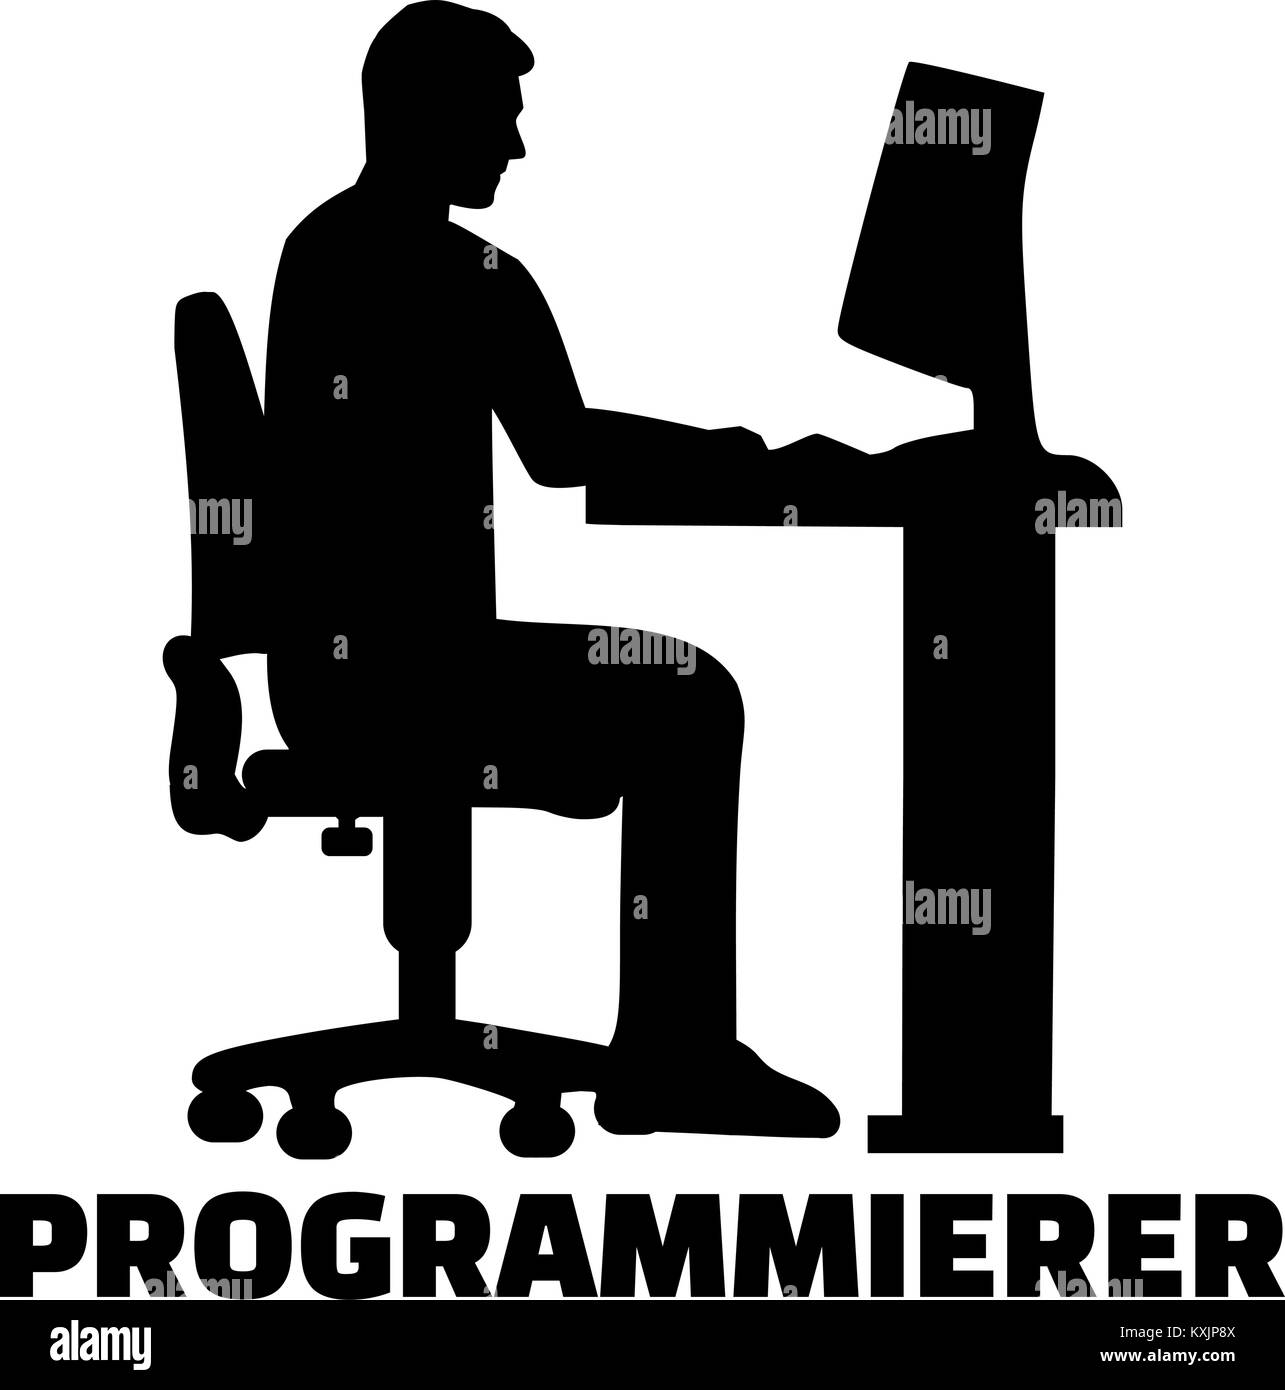 Silhouette programmeur allemand avec titre de l'offre Illustration de Vecteur